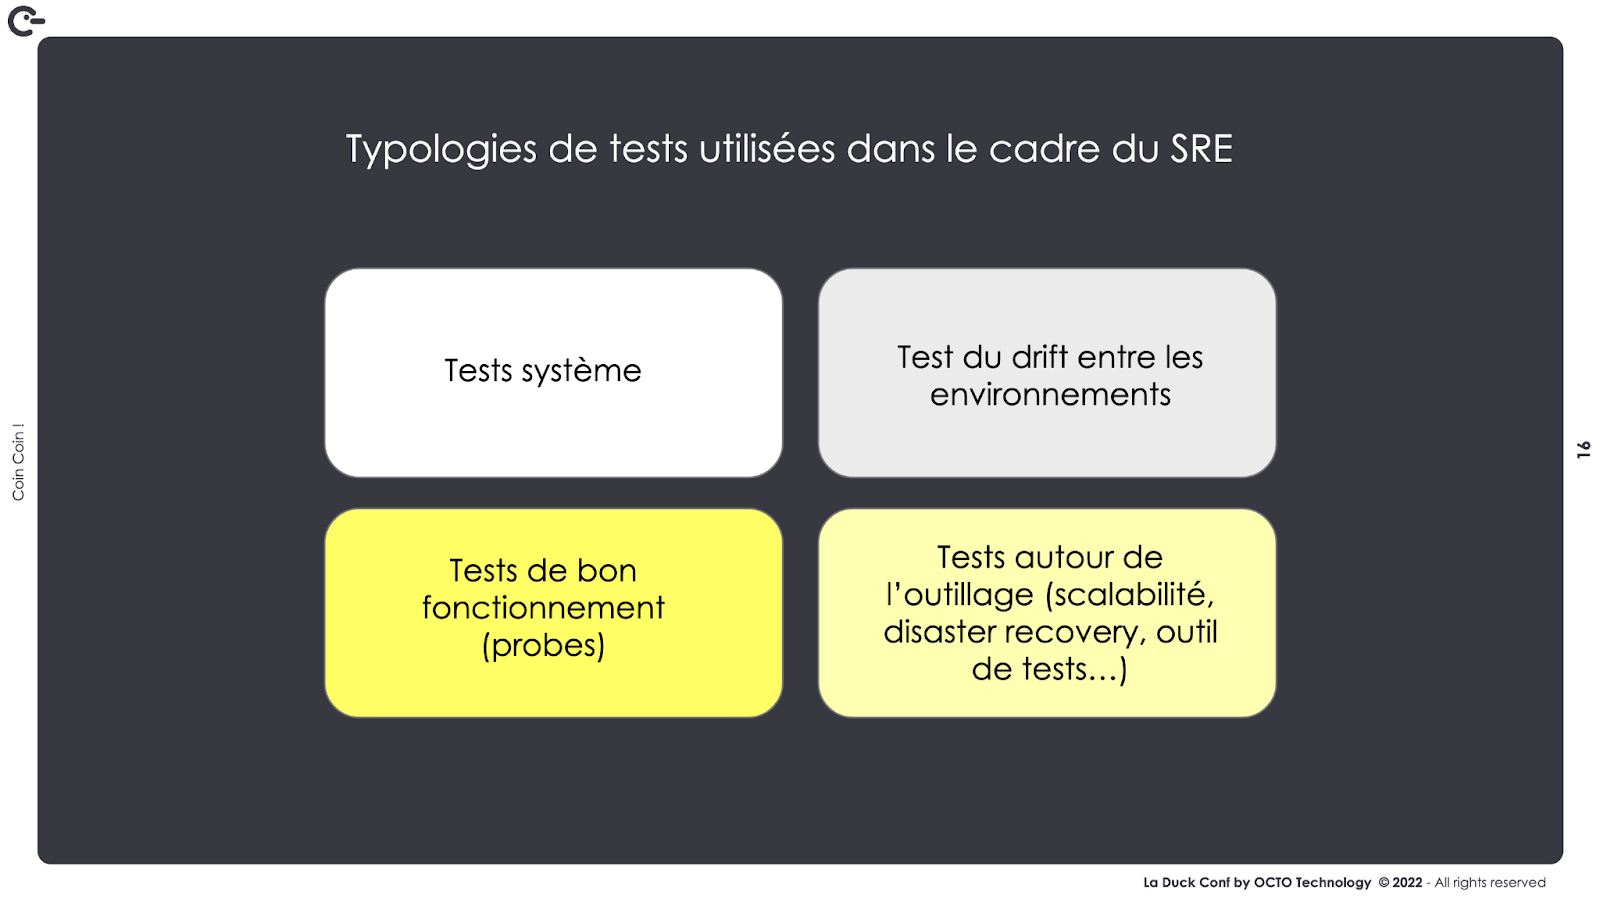 4 types de tests : Tests syteme, tests de drift entre les environnements,, tests de bon fonctionnement (probes) et tests d'outillage (scalabilité, recovery, etc...).